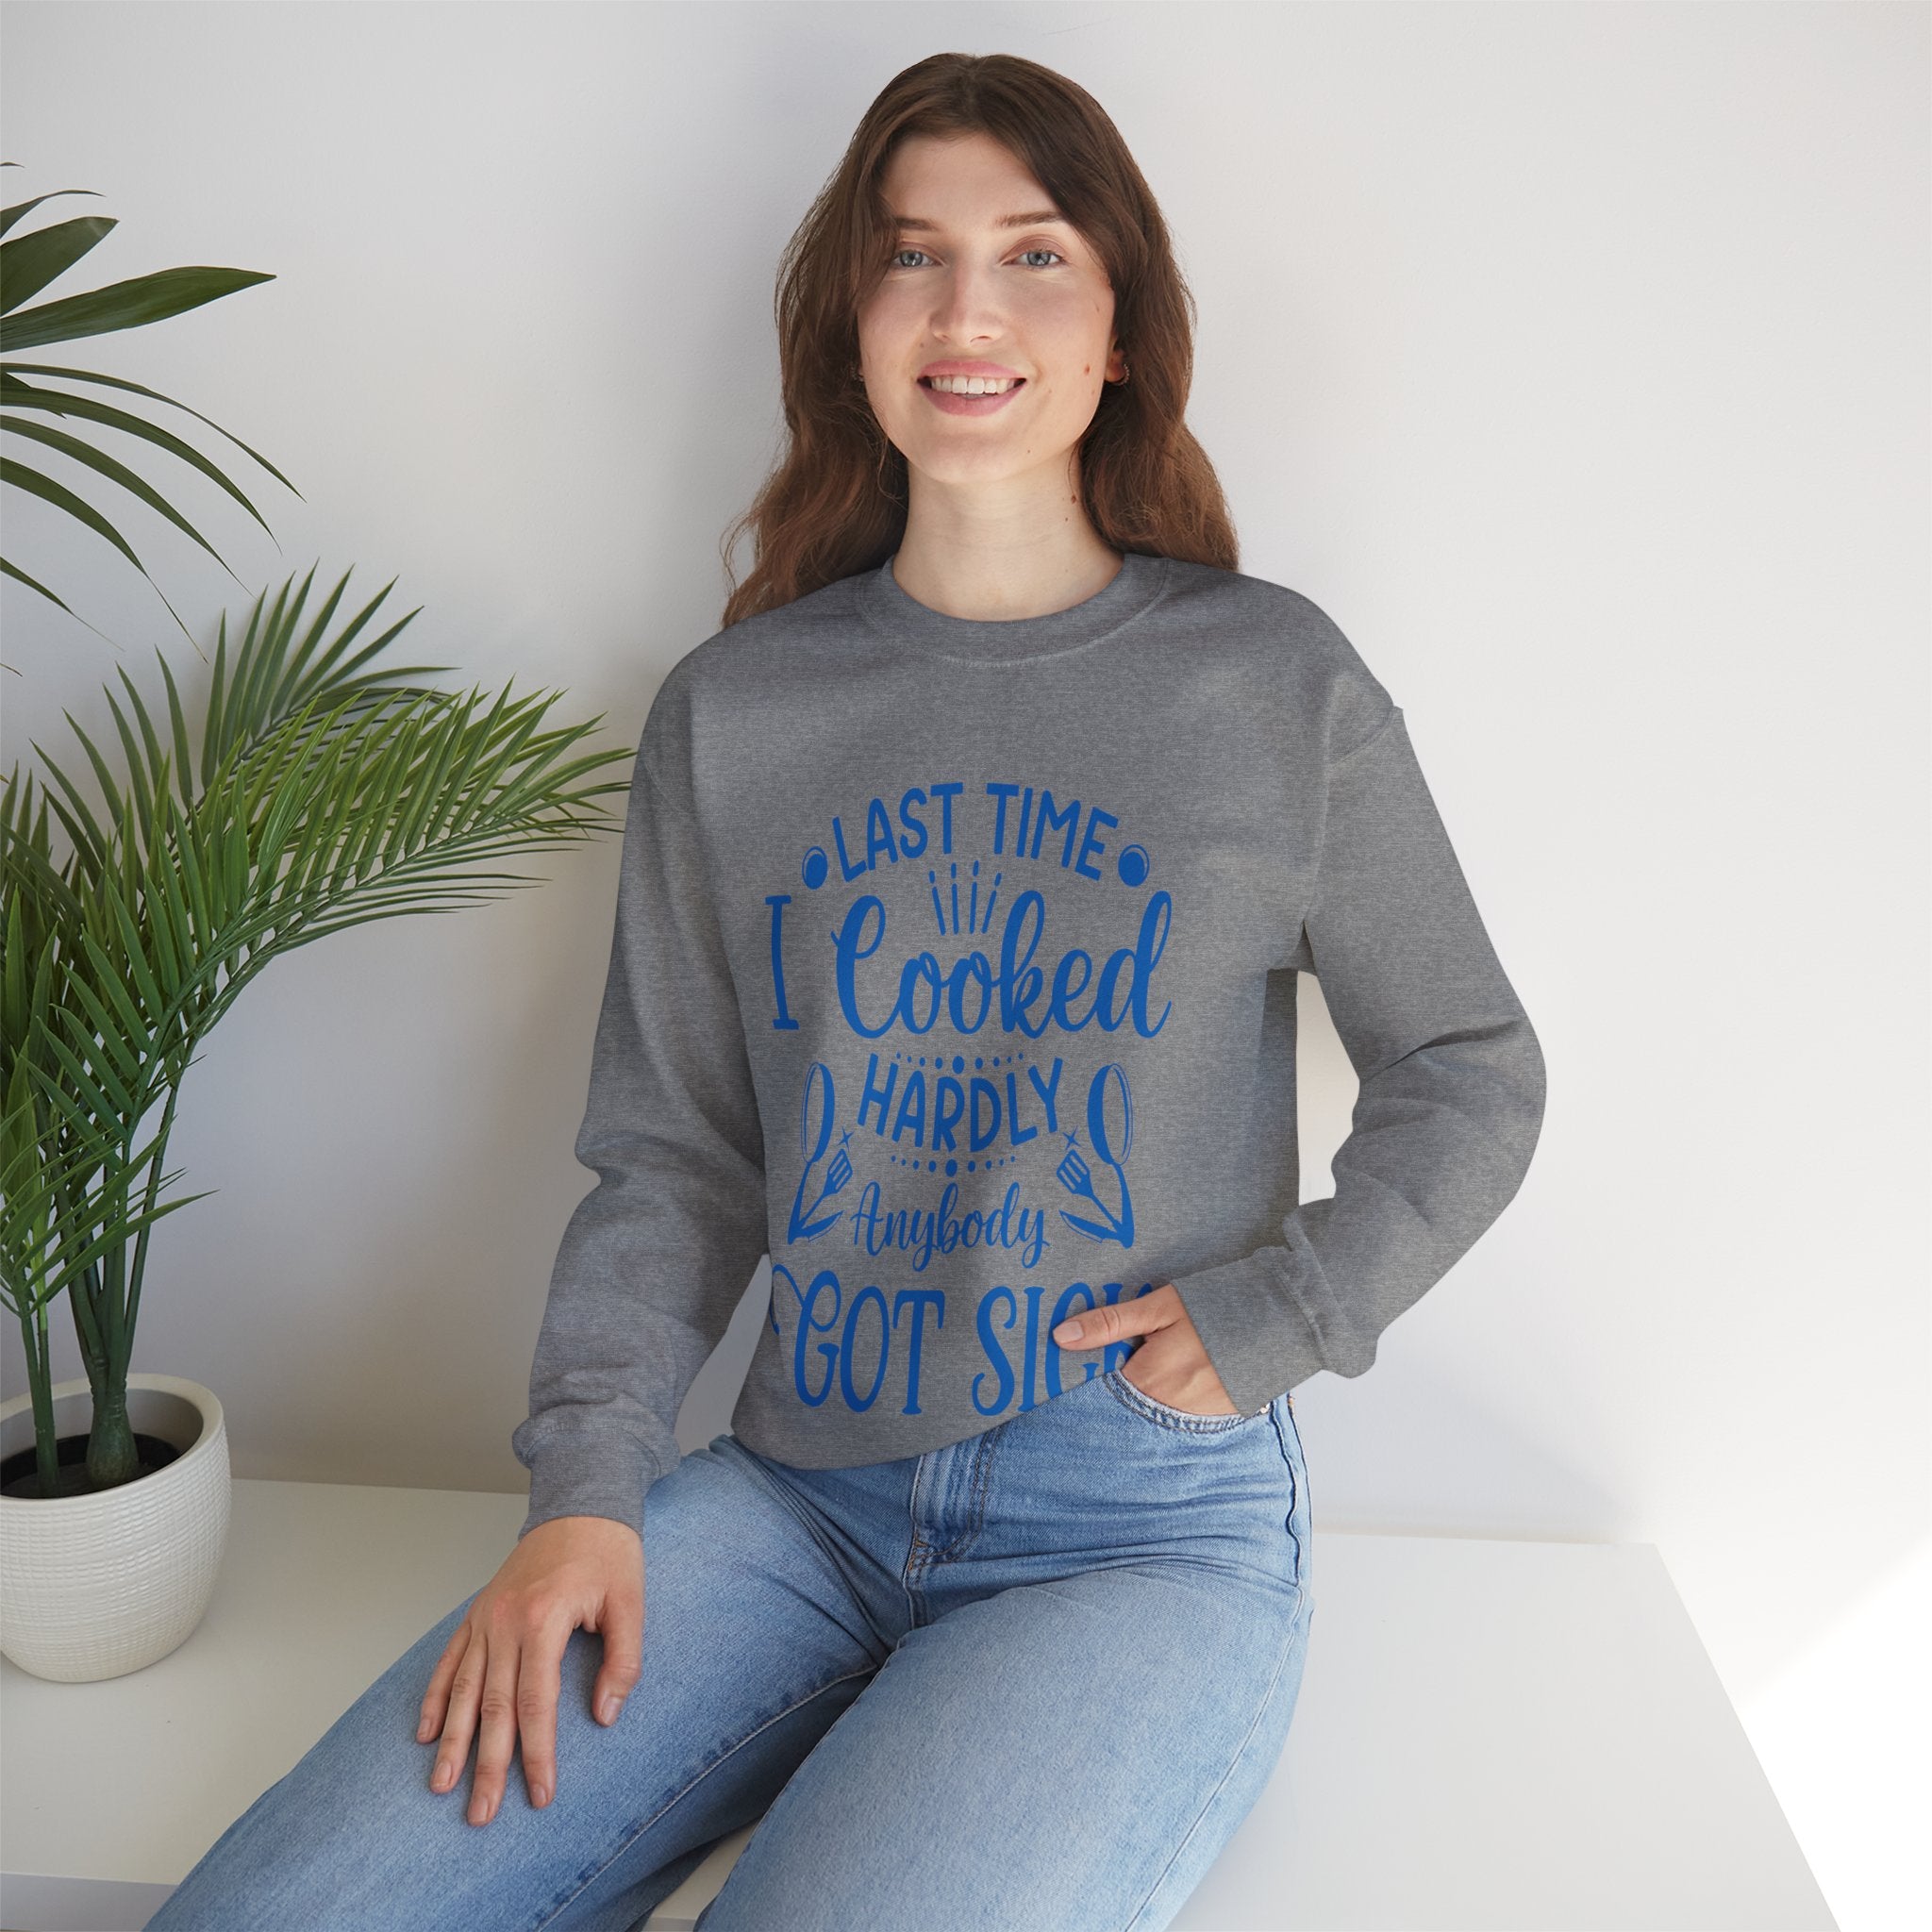 Cooking Expert Sweatshirt